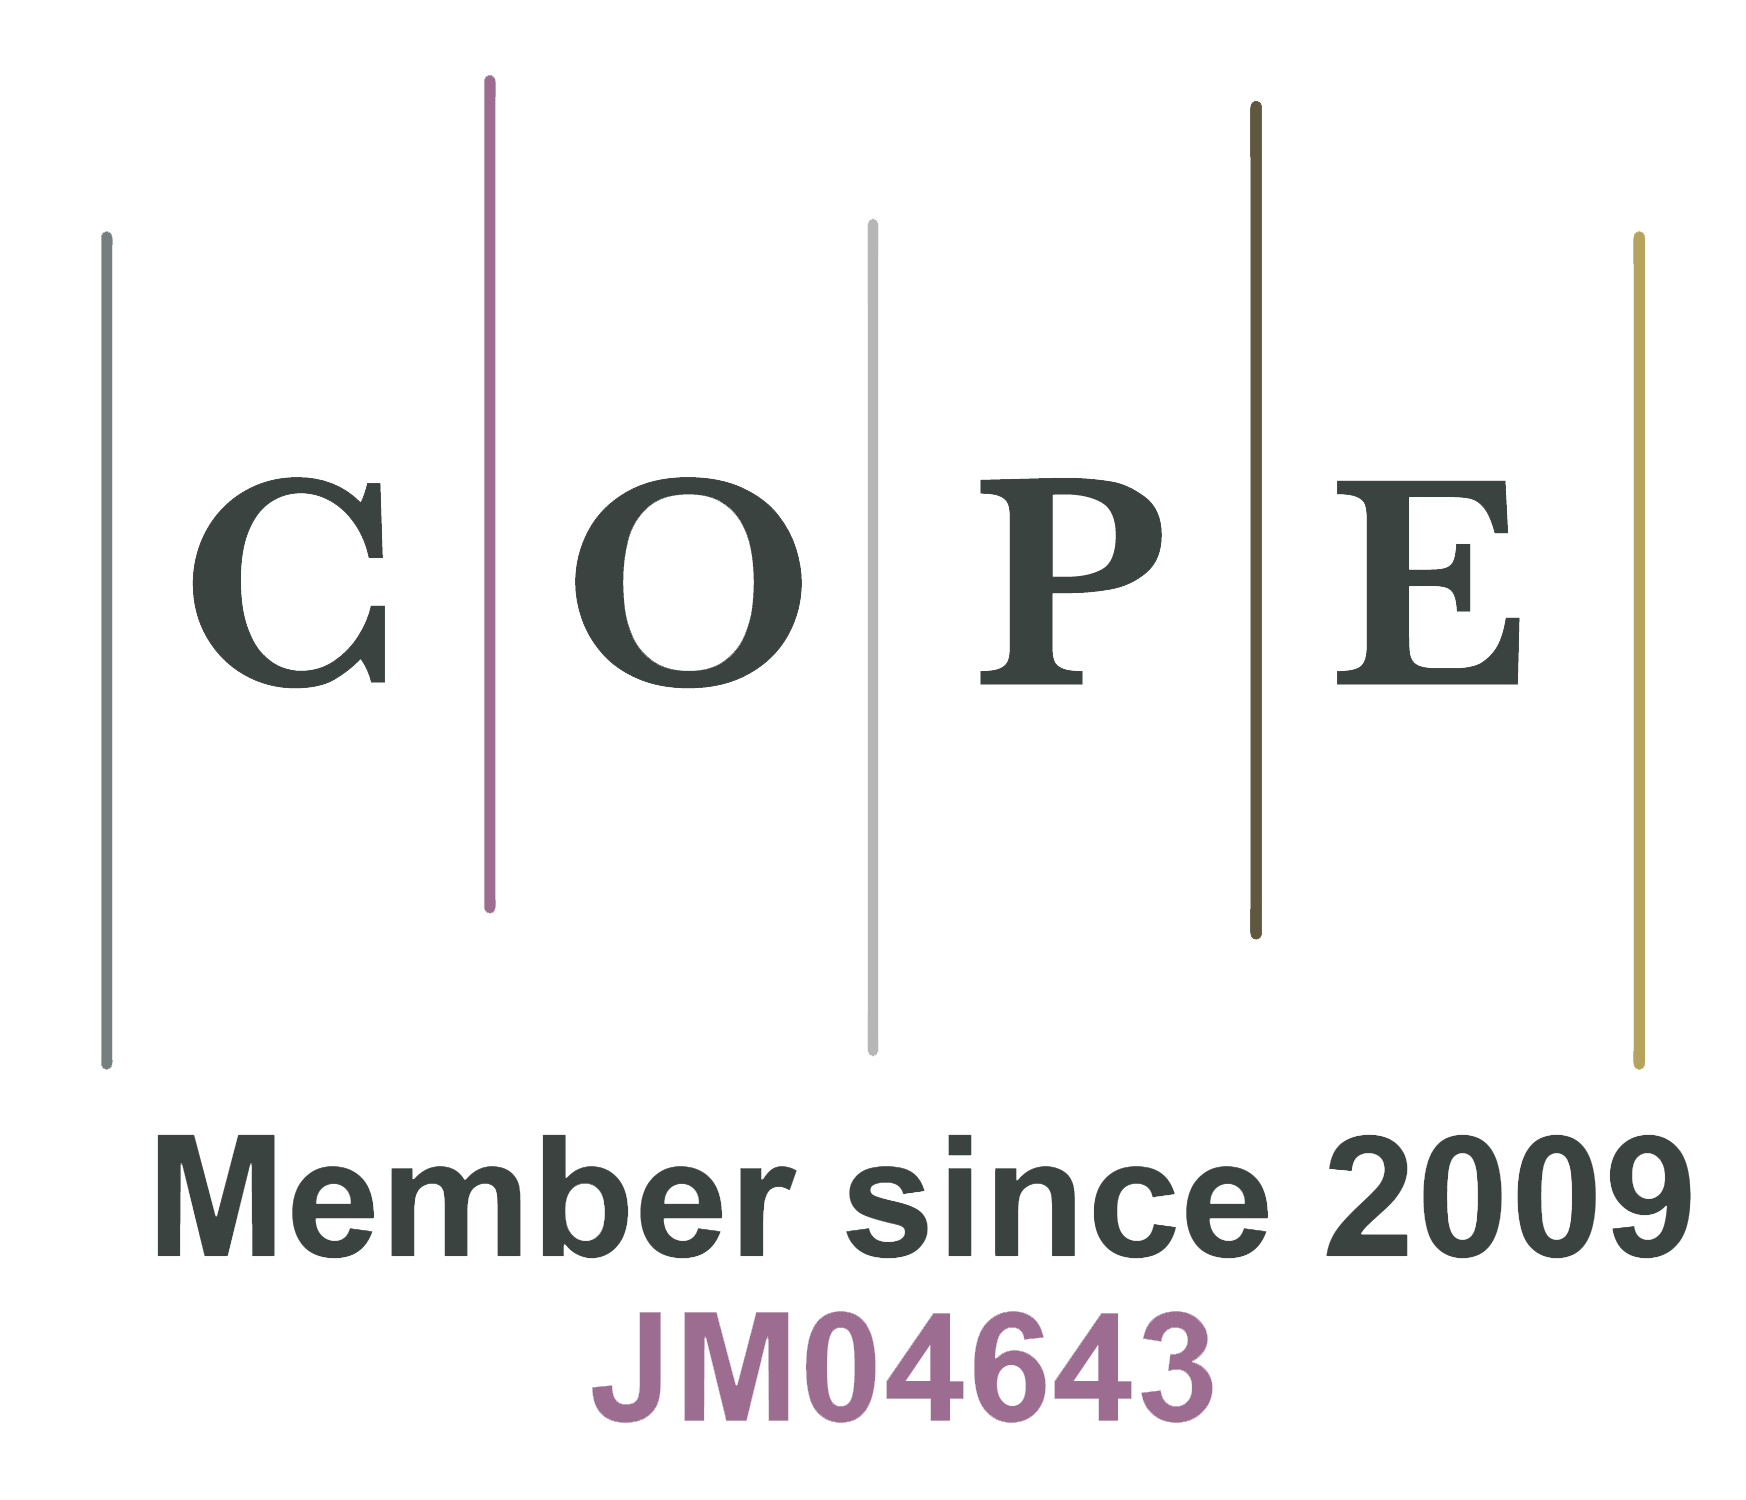 COPE Member since 2009 JM04643